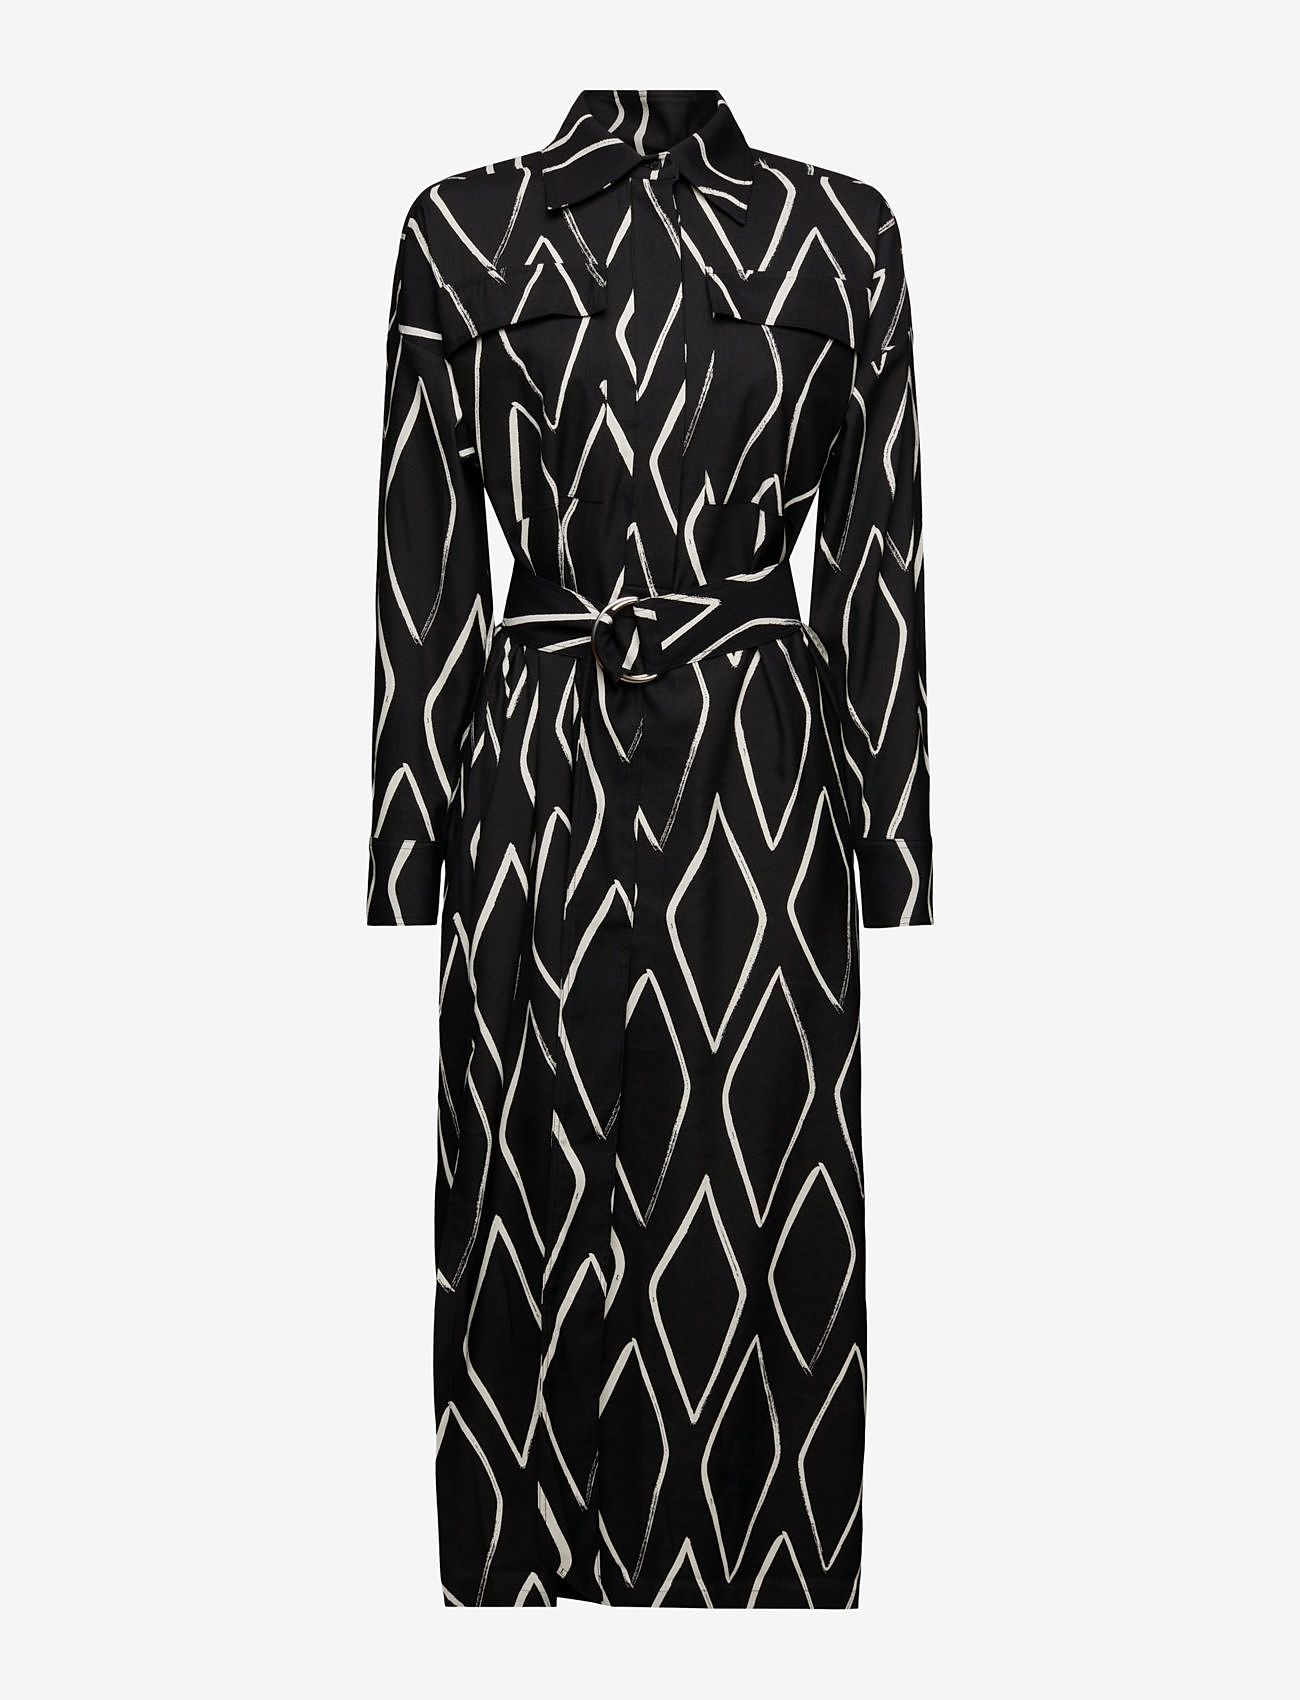 Esprit Casual - Dresses light woven - skjortklänningar - black 2 - 0